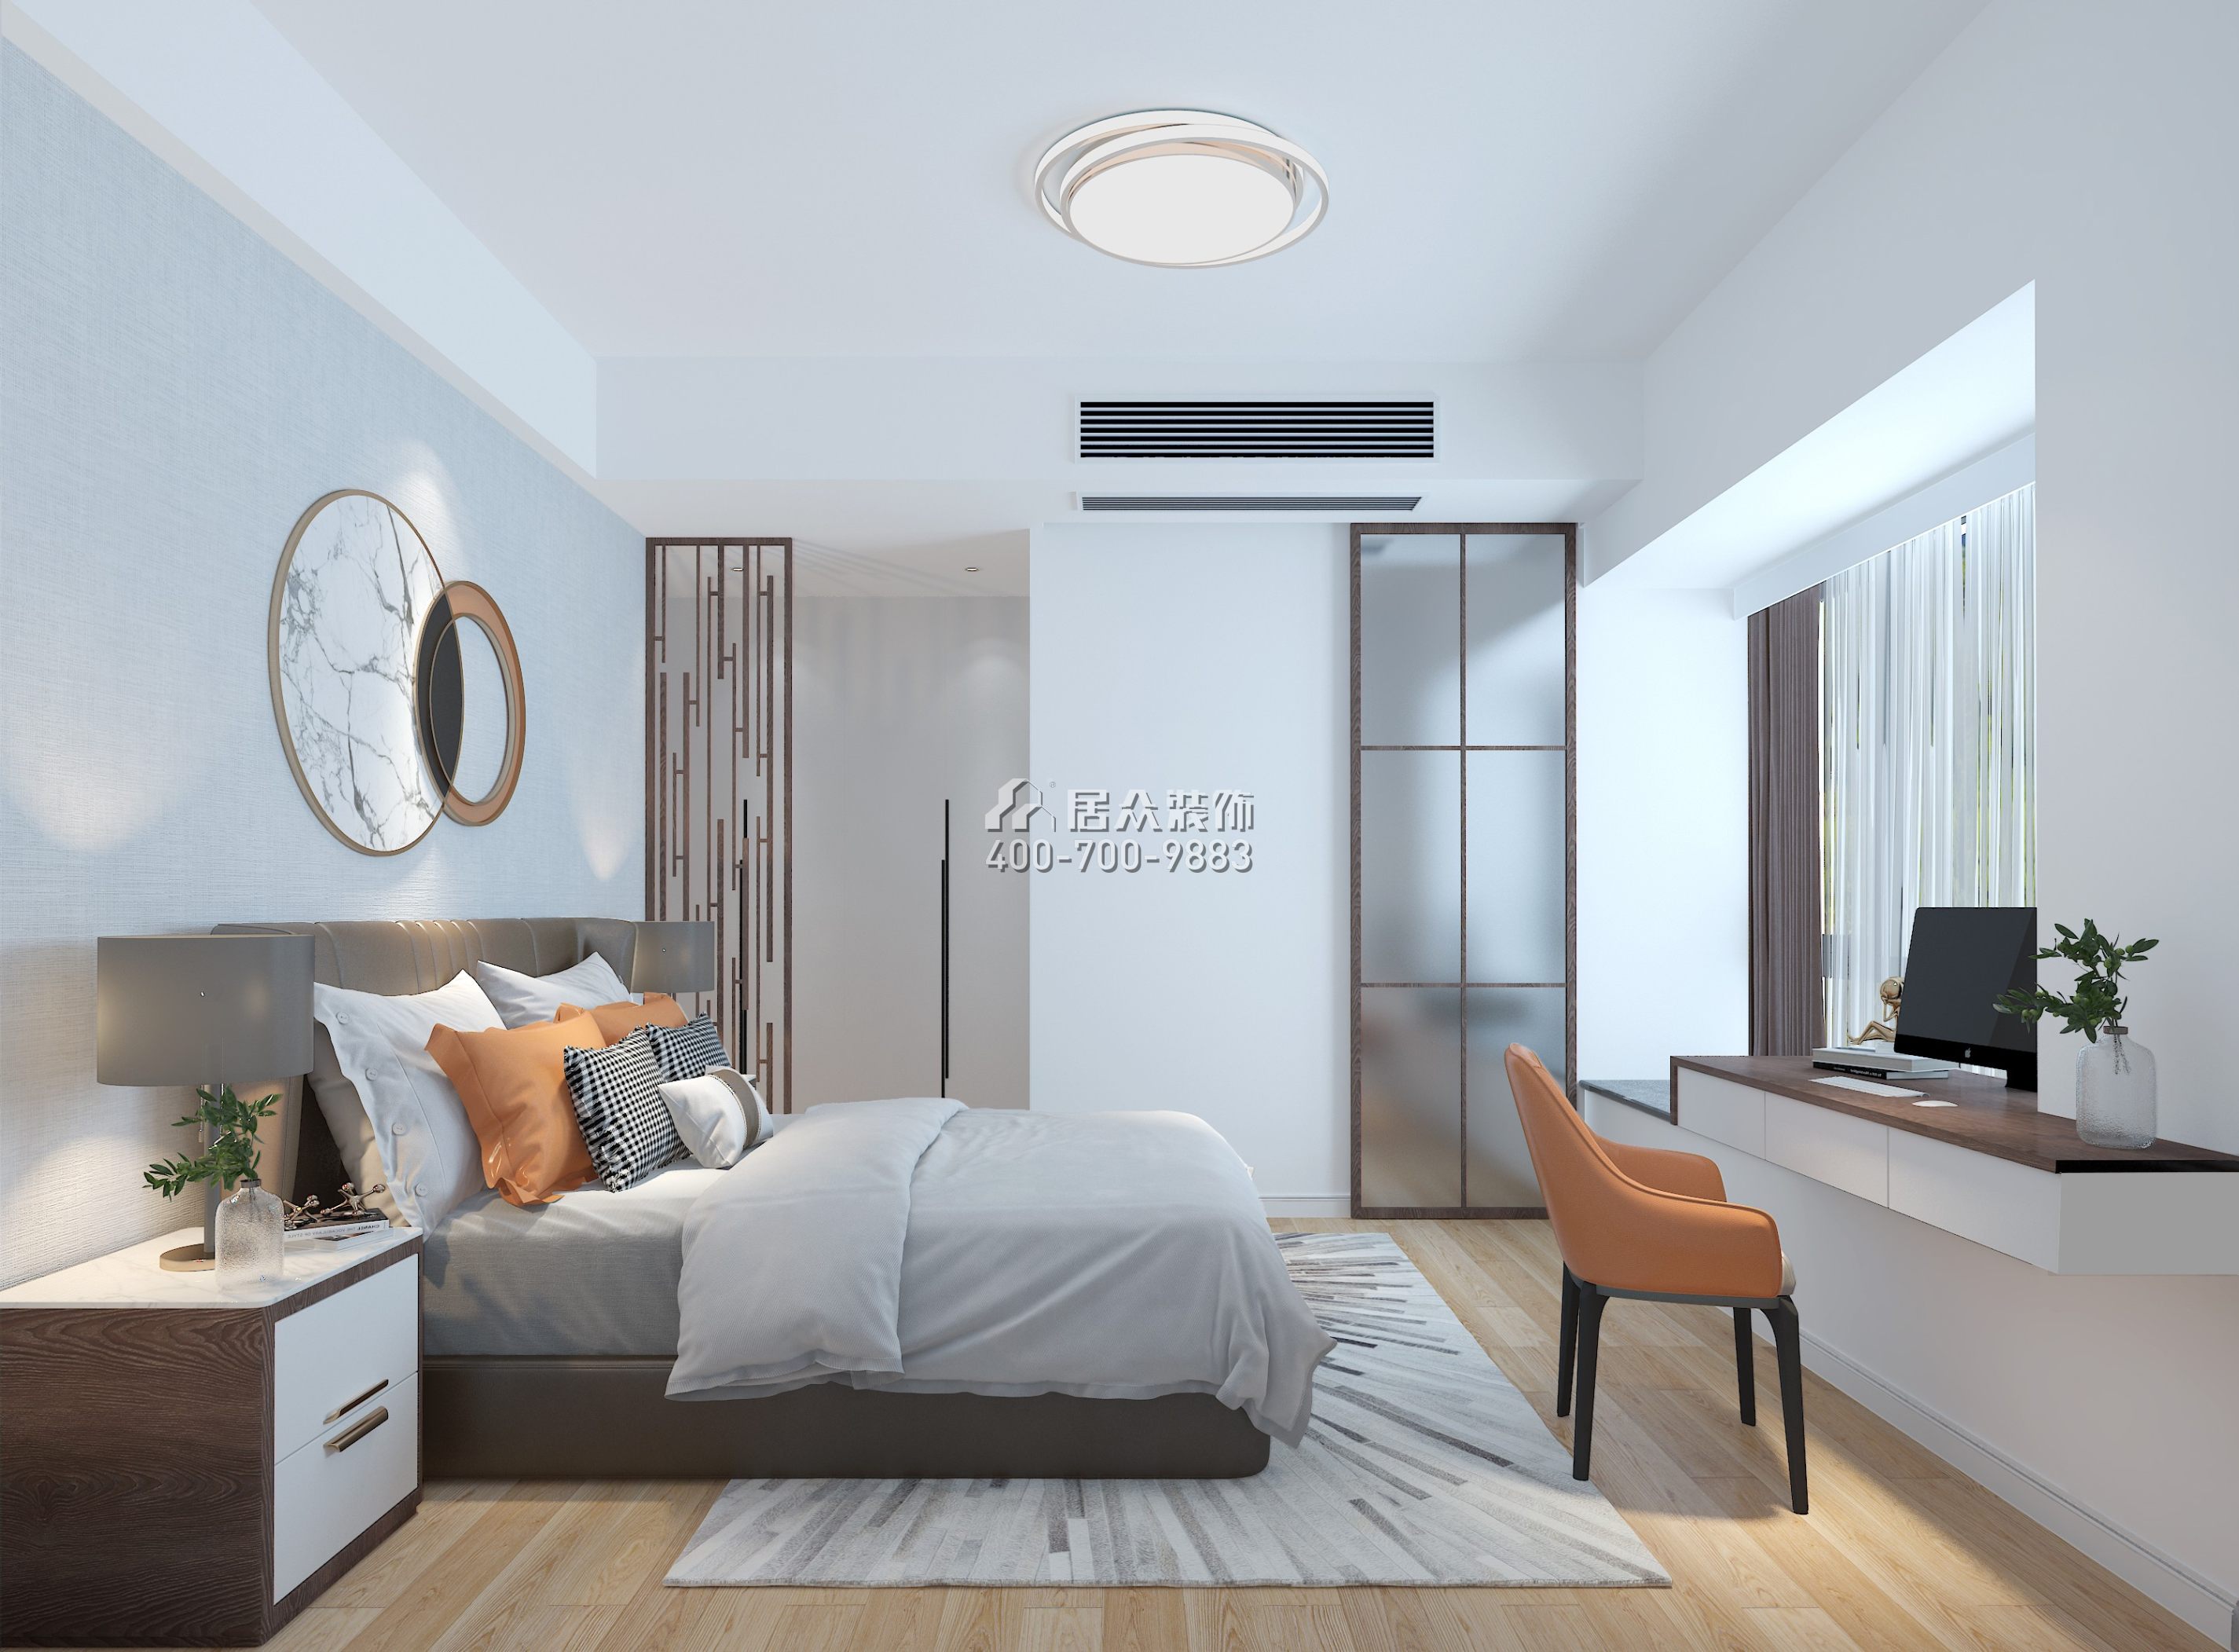 京基·御景峯121平方米現代簡約風格平層戶型臥室裝修效果圖